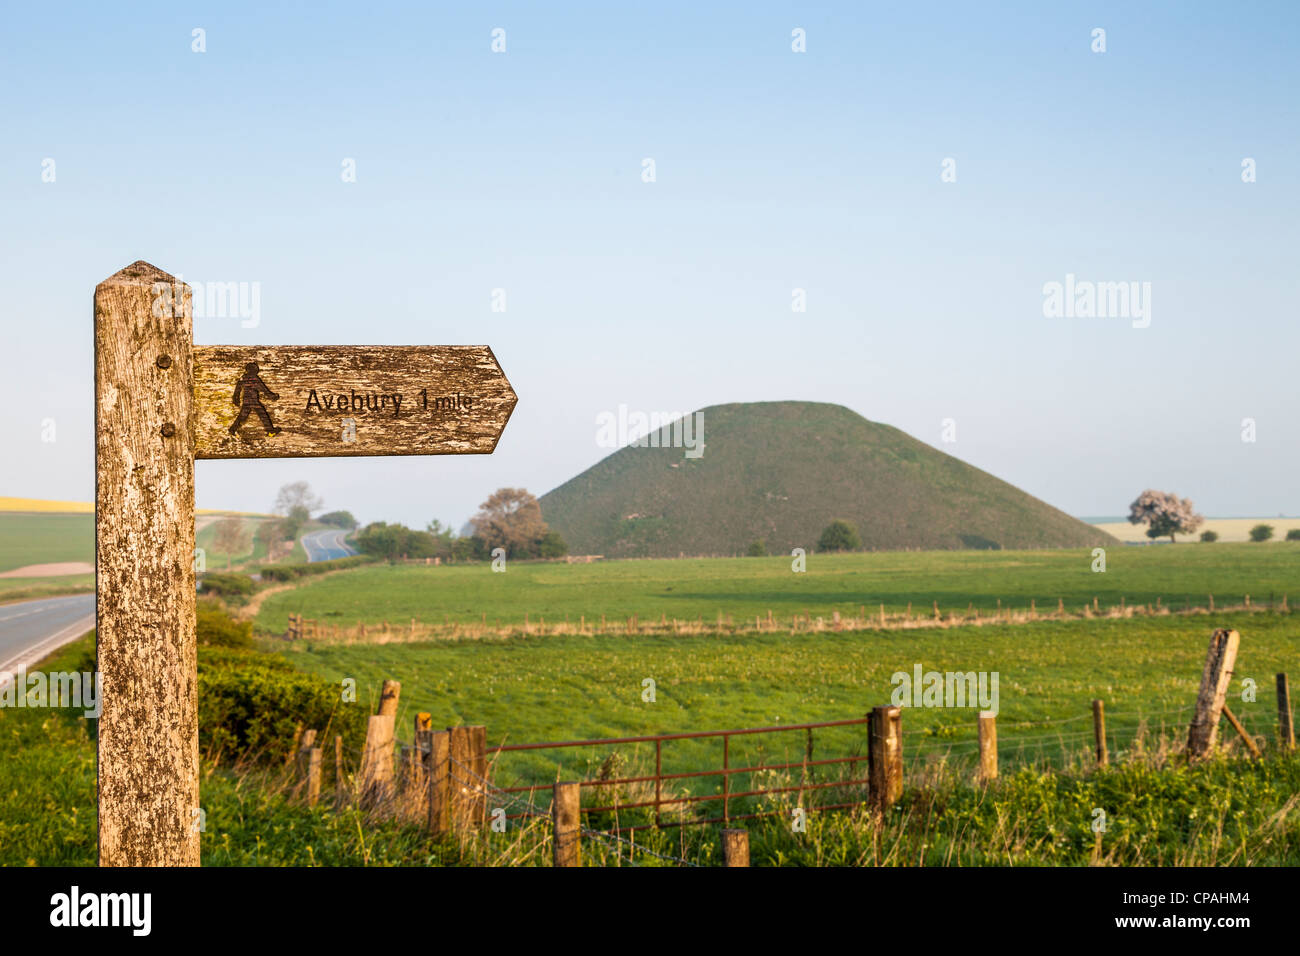 Seguire le indicazioni per il sentiero di Avebury nel Wiltshire, con Silbury Hill, un monumento del neolitico, in background. Foto Stock